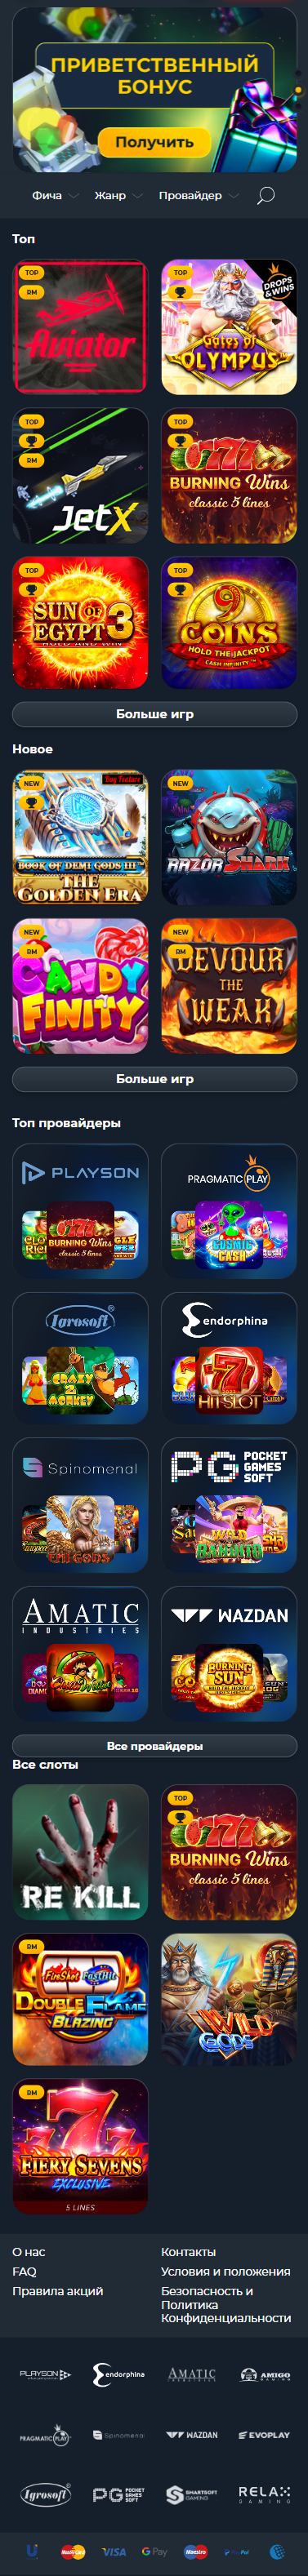 Vivi Casino - Онлайн-развлечения на высшем уровне